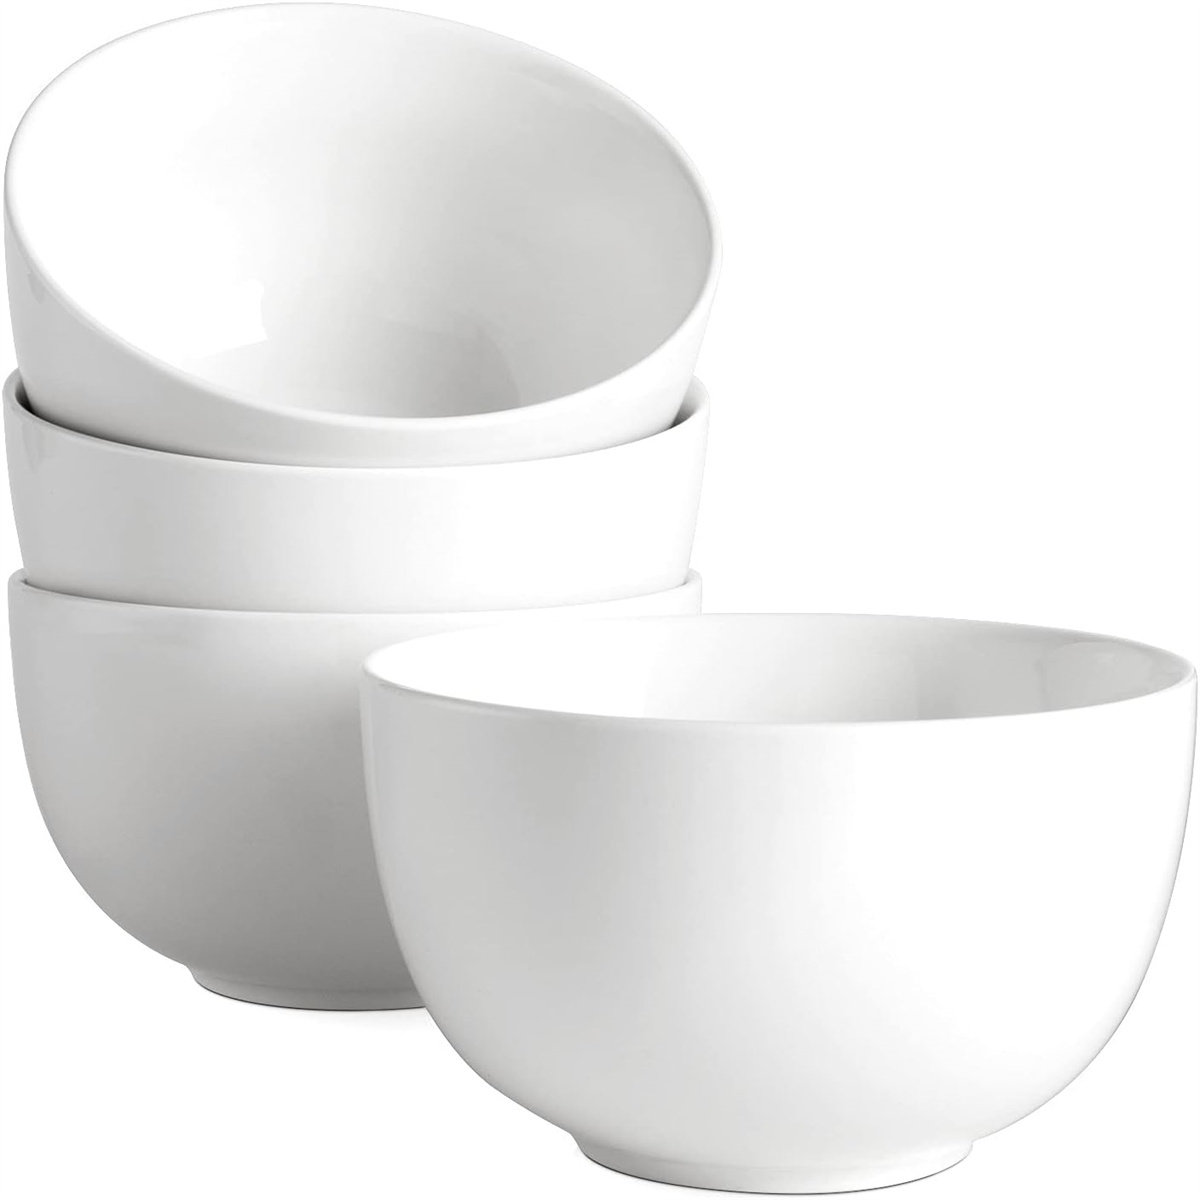 https://assets.wfcdn.com/im/98924117/compr-r85/2487/248795222/deep-soup-bowls-cereal-bowls-30-ounces-large-bowls-set-of-4-for-kitchen-white-ceramic-bowls-for-cereal-soup-oatmeal-salad-ramen-noodle-rice-dishwasher-oven-safe.jpg